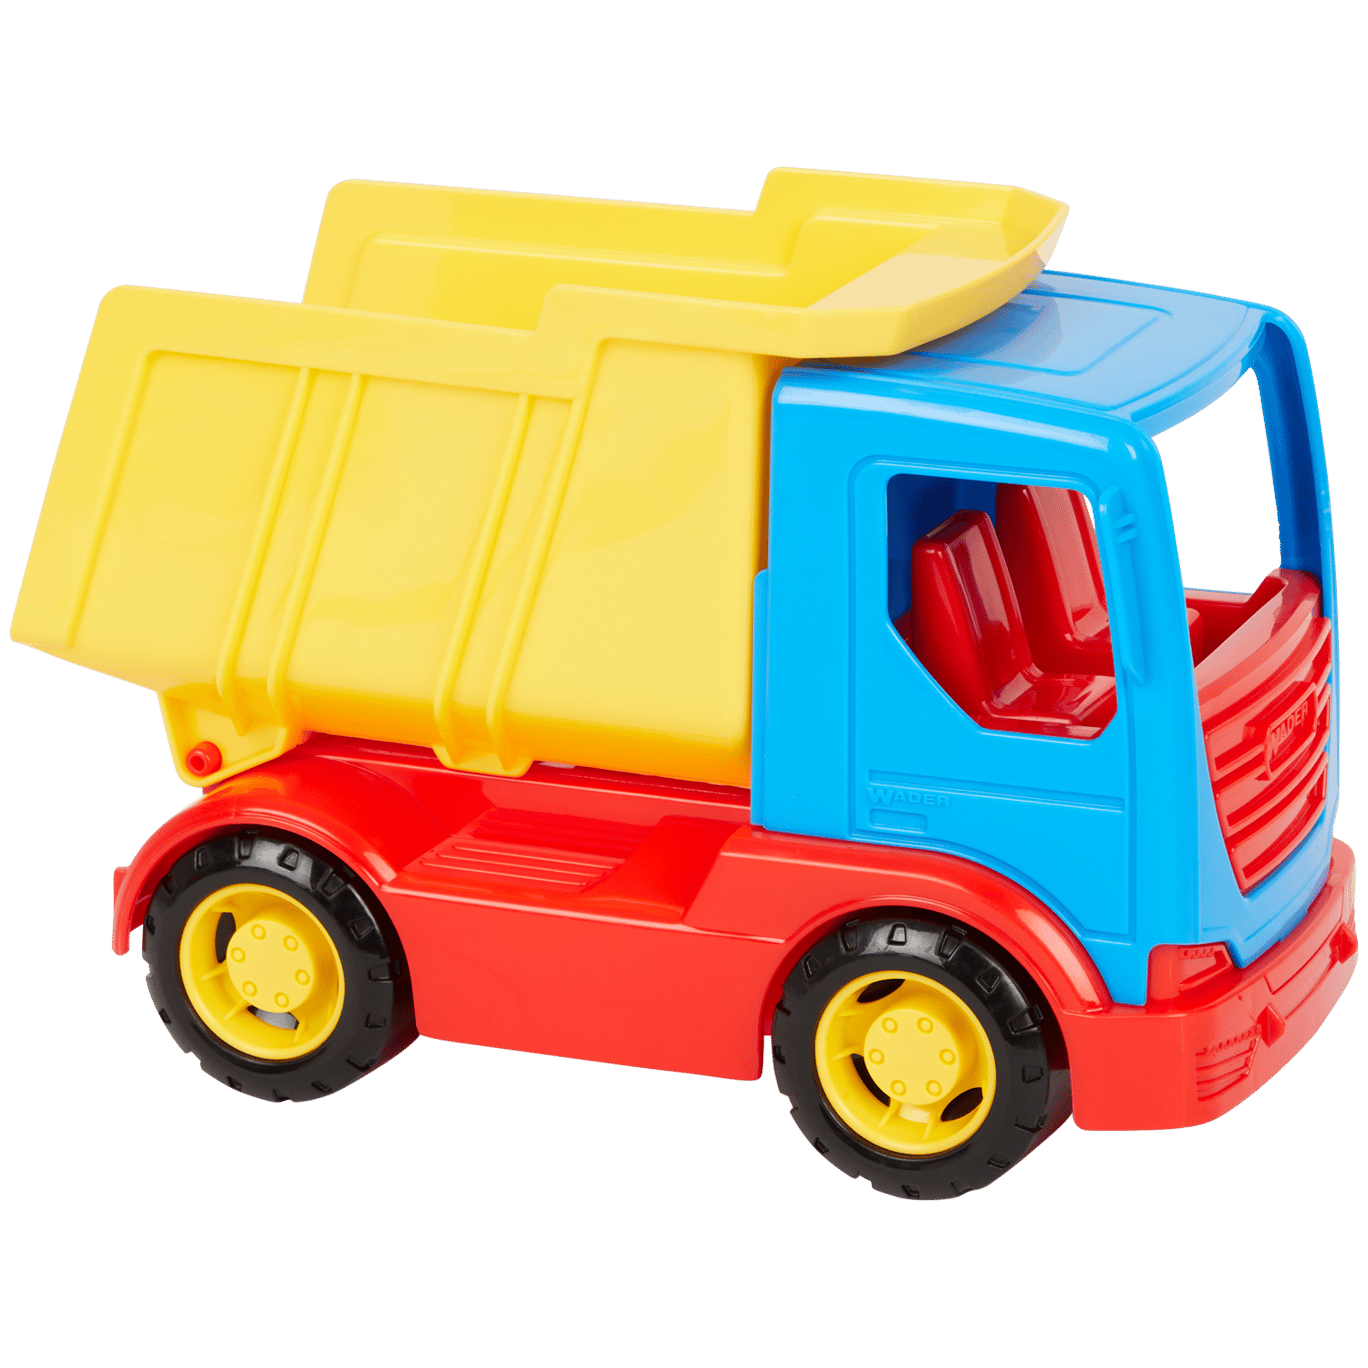 Mondstuk toxiciteit Roest Wader speelgoedvrachtwagen | Action.com